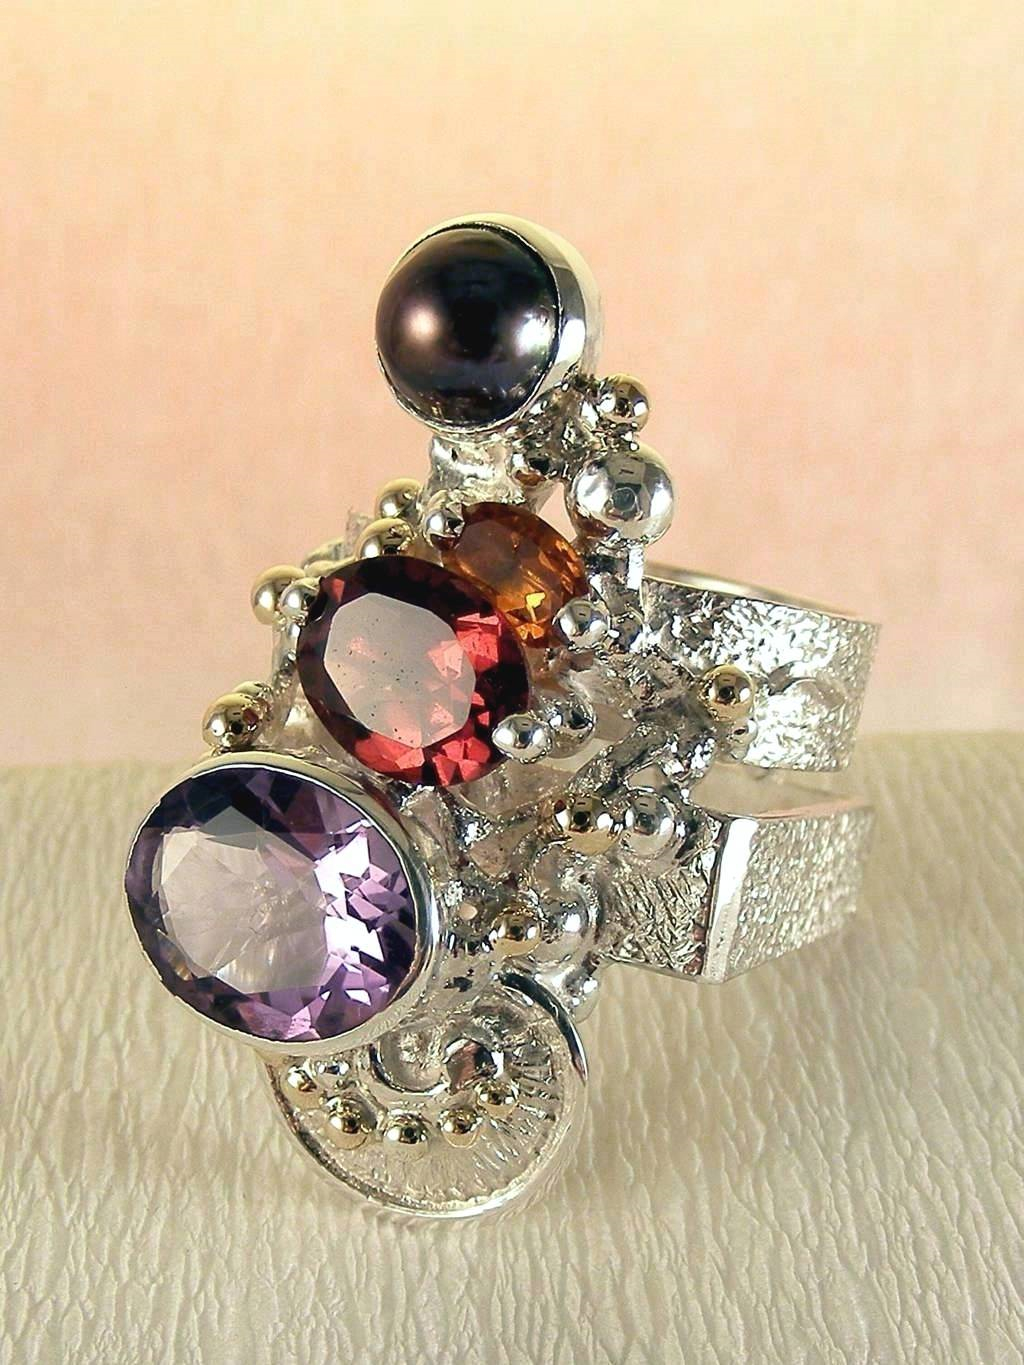 módní šperky, modní styl, sběratelská položka, šperky vyrobené ze stříbra a zlata, ručně vyráběný prsten s ametystem a granátem, ručně vyráběný prsten s citrinem a granátem, ručně vyráběný prsten s granátem a perlou, ručně vyráběný prsten s ametystem a perlou, Gregory Pyra Piro prstýnek 2631